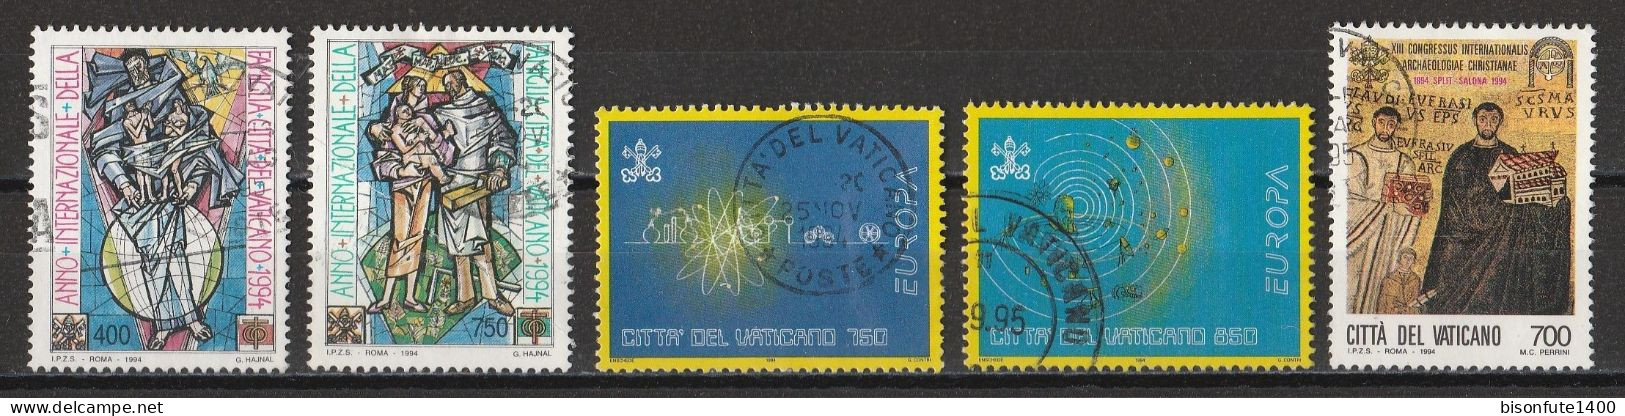 Vatican 1994 : Timbres Yvert & Tellier N° 980 - 981 - 984 - 985 - 987 - 991 - 993 - 995 - 996 Et 997 Se Tenant Et Oblit. - Oblitérés